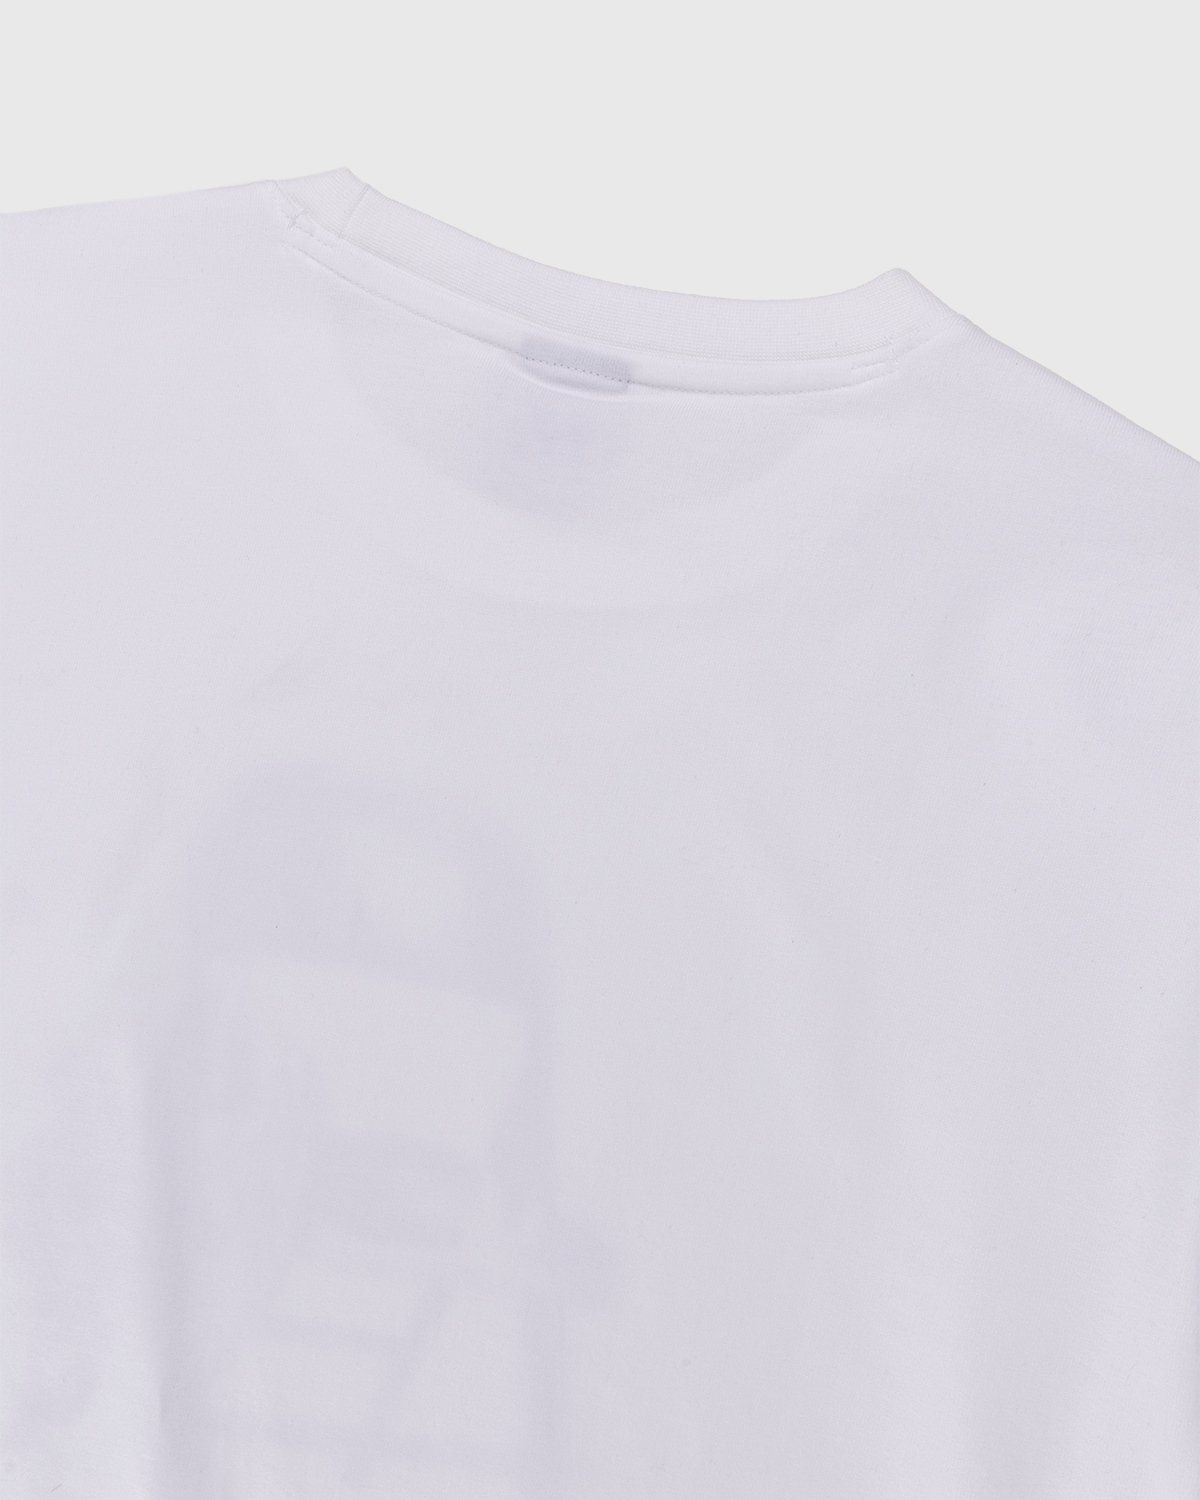 New Balance – Conversations Amongst Us Heavyweight T-Shirt White - T-shirts - White - Image 3